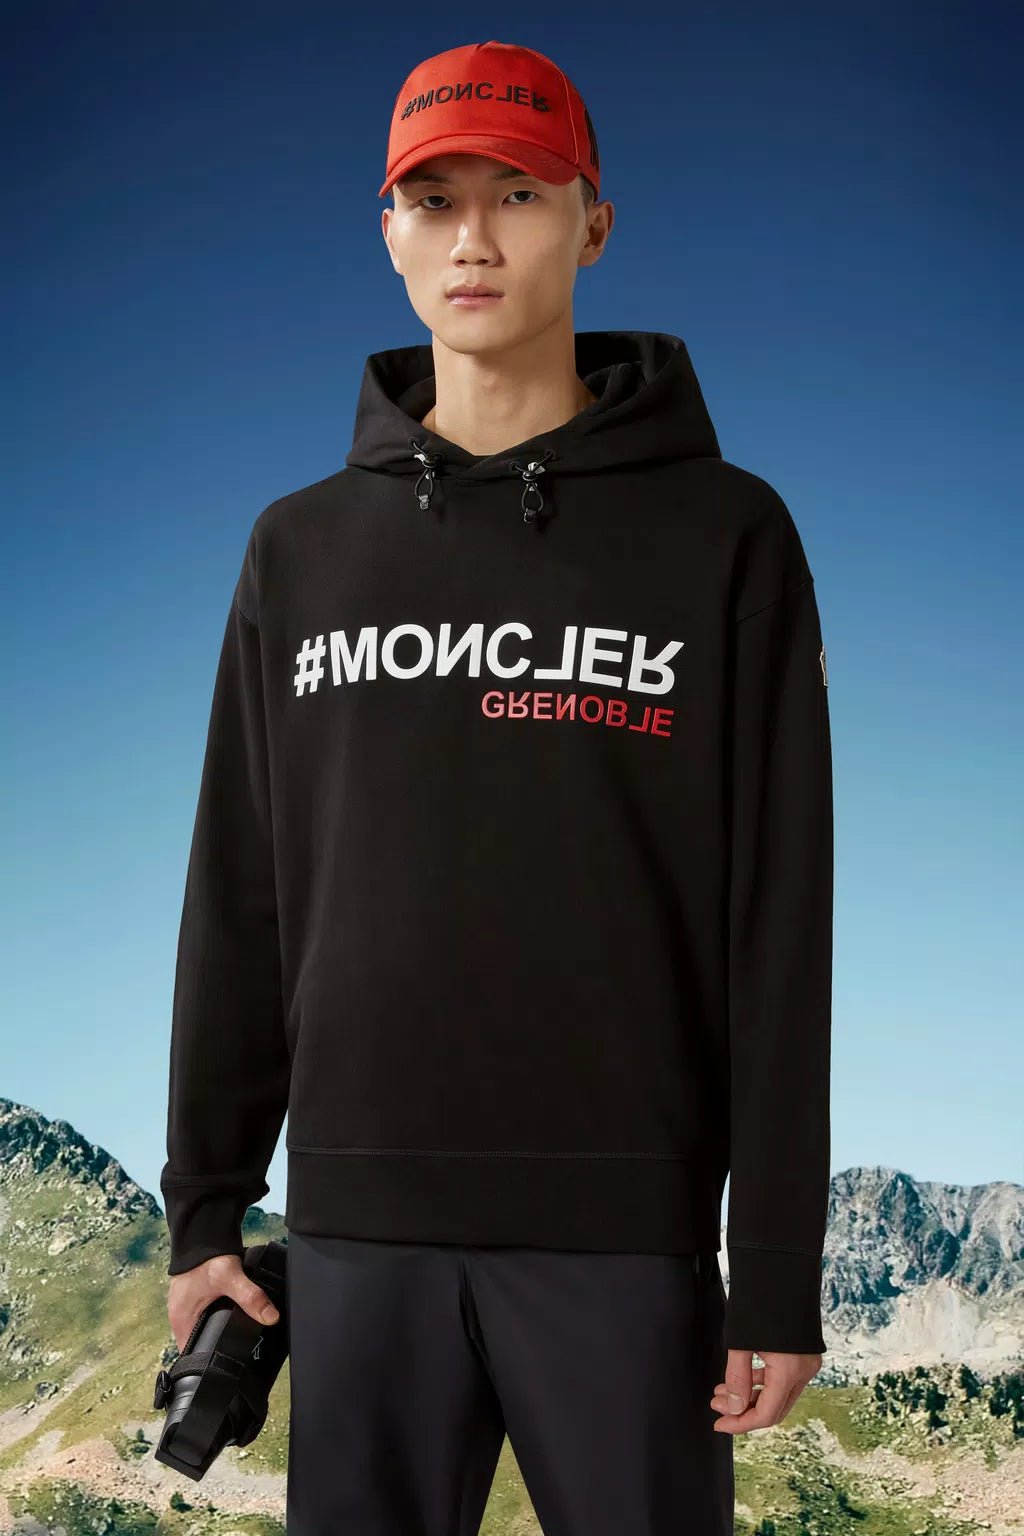 Moncler Grenoble - Sweat à capuche black à logo - Lothaire